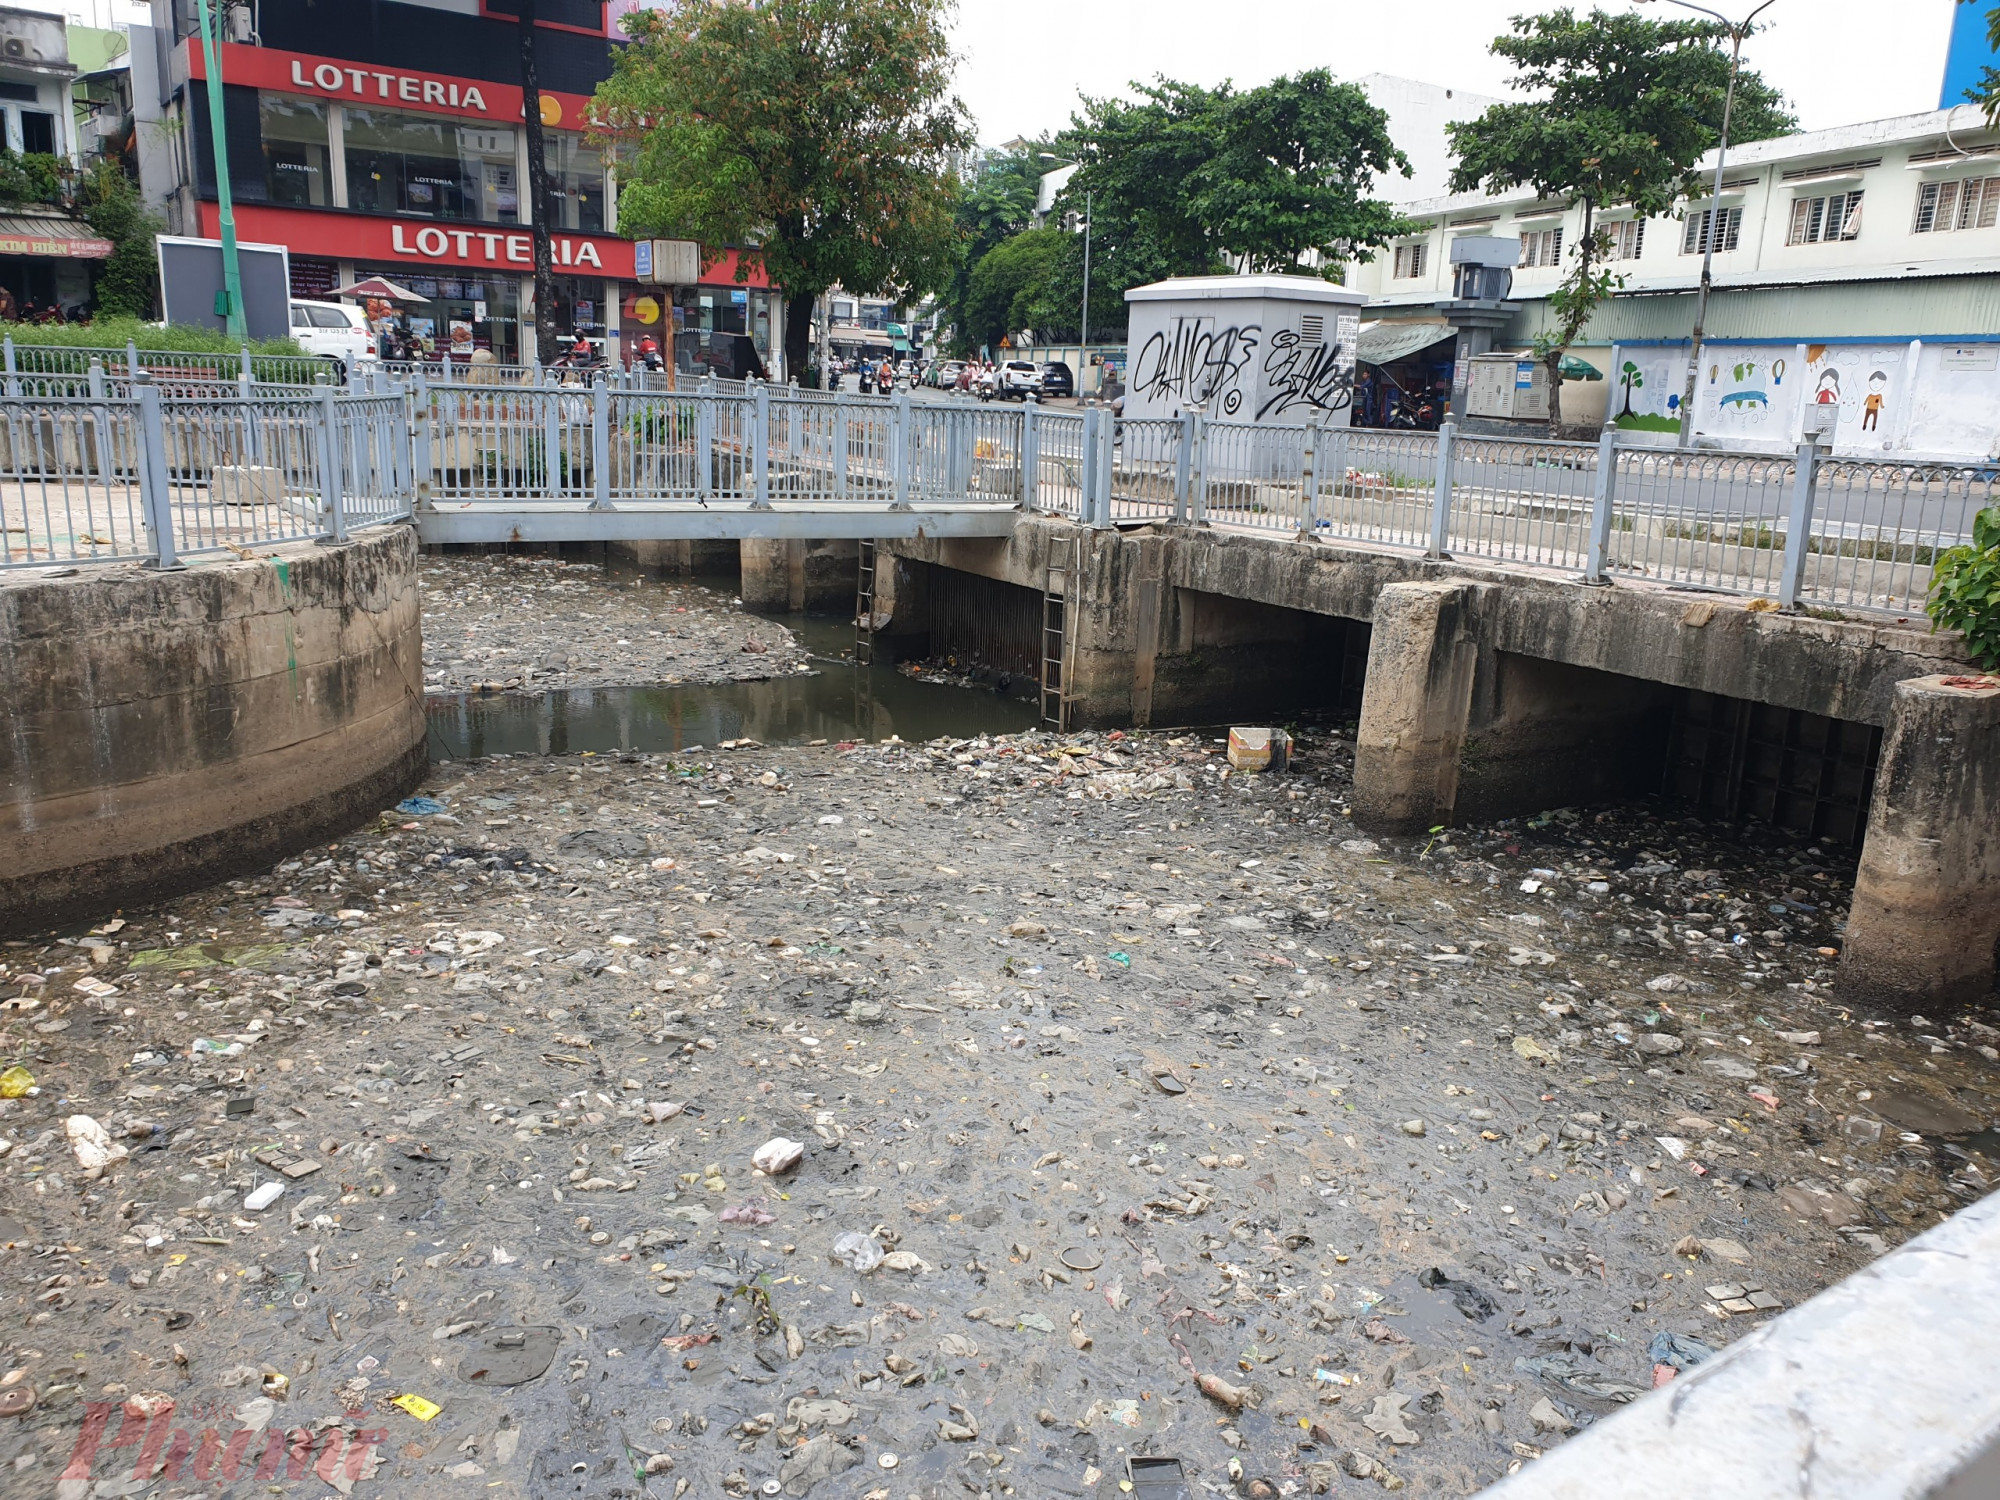 Ngày 31/3, đoạn đầu kênh Nhiêu Lộc- Thị Nghè đoạn qua địa bàn quận Tân Bình và quận 3 xuất hiện tình trạng rác thải xếp dày đặc mặt kênh.